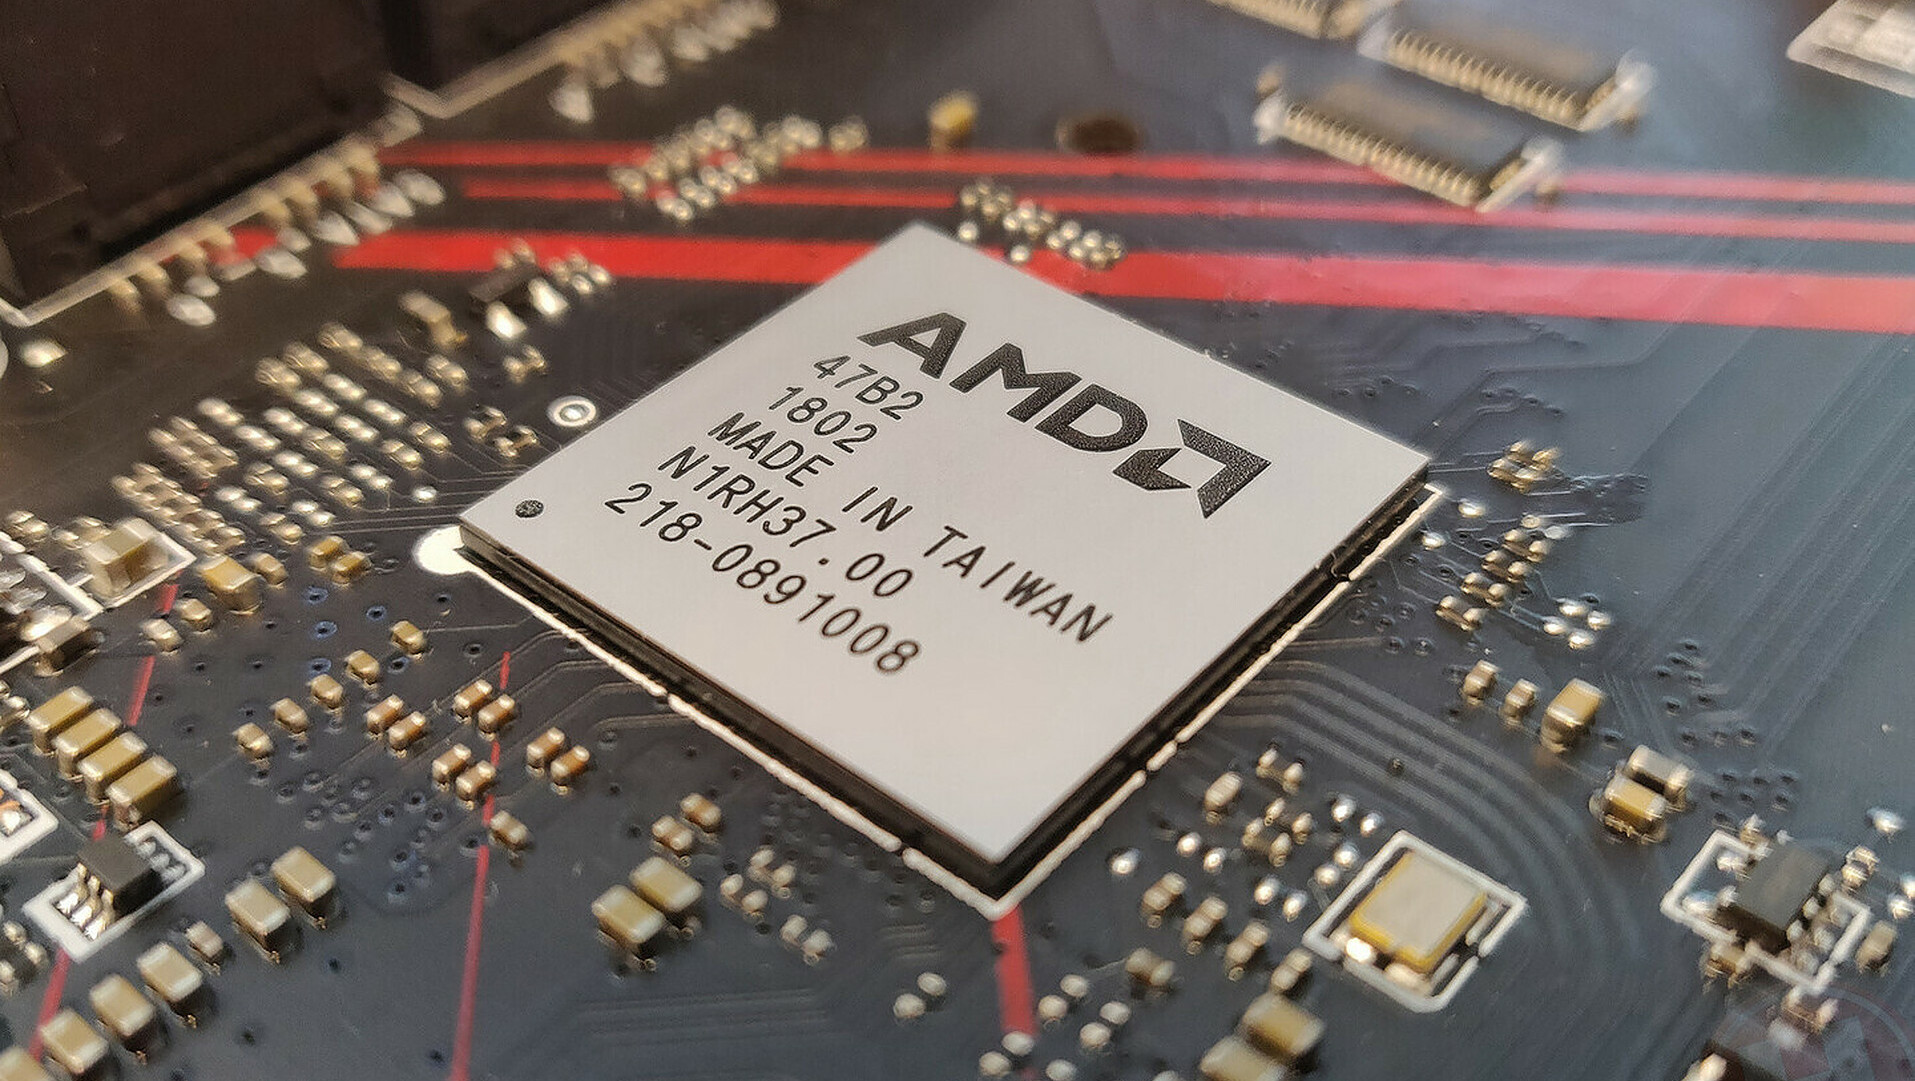 شركة AMD ستصلح مشكلة شرائح Series 500 و أجهزة الـ USB مع تحديث Bios